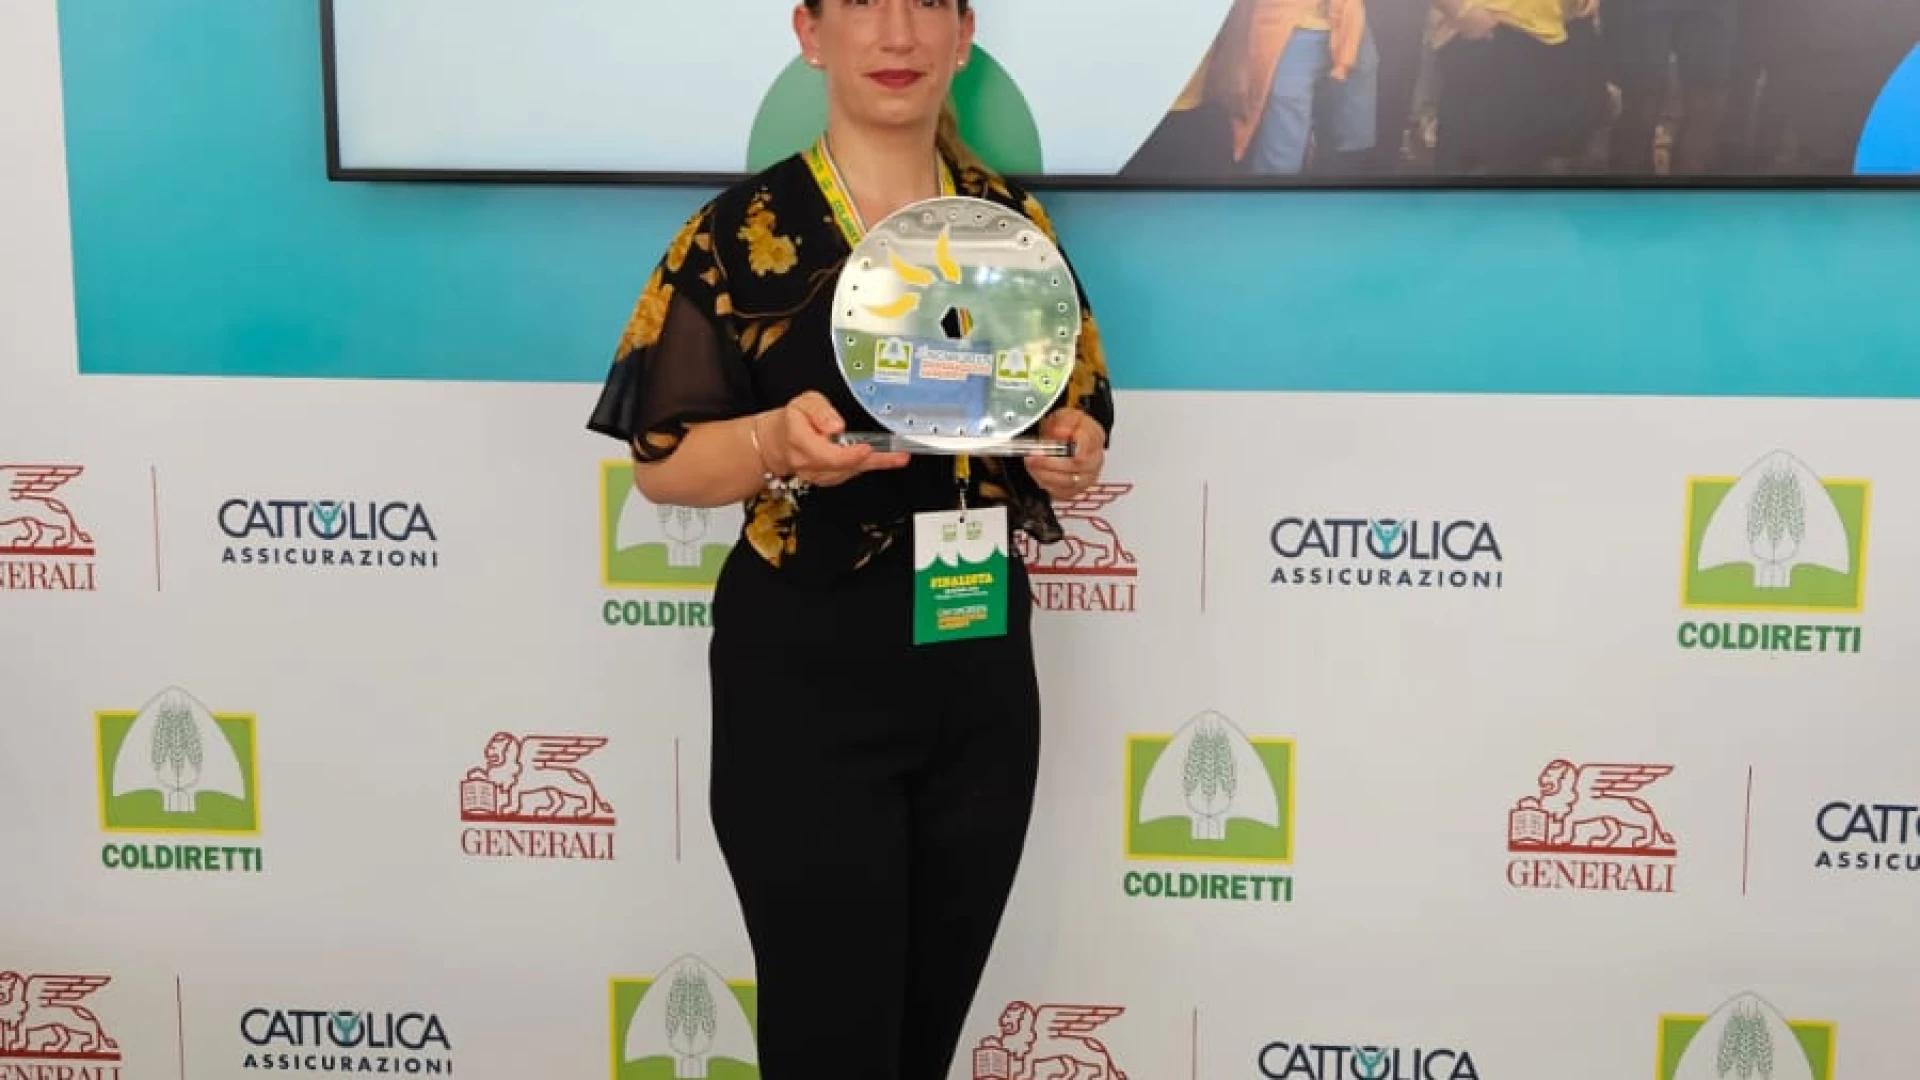 Premio Oscar Green Coldiretti, la molisana Maria Antonietta Paladino conquista il secondo posto nazionale.